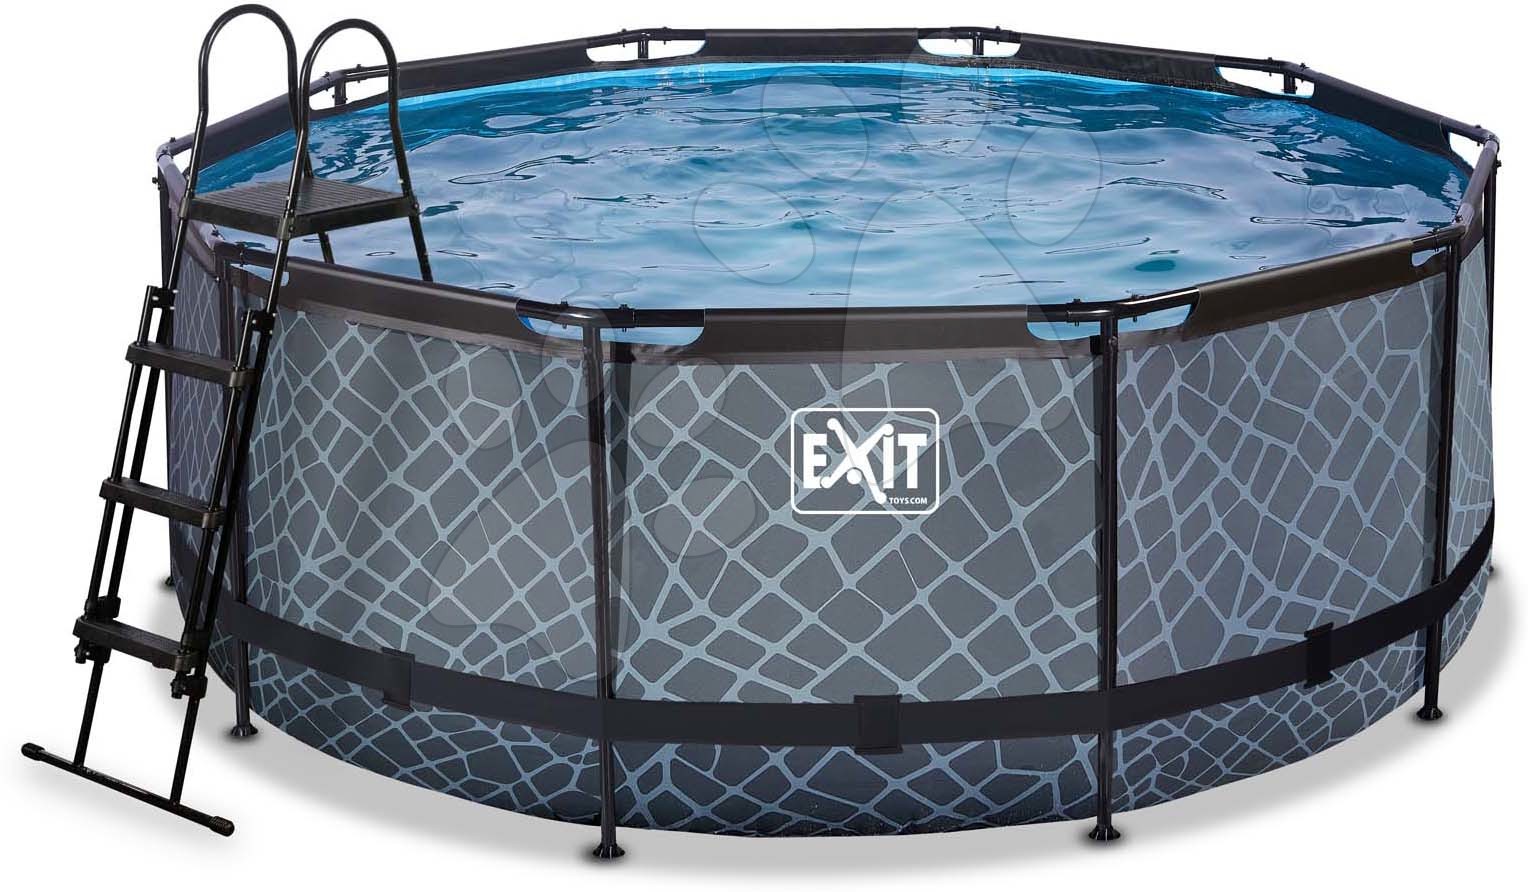 Bazén s pískovou filtrací Stone pool Exit Toys kruhový ocelová konstrukce 360*122 cm šedý od 6 let